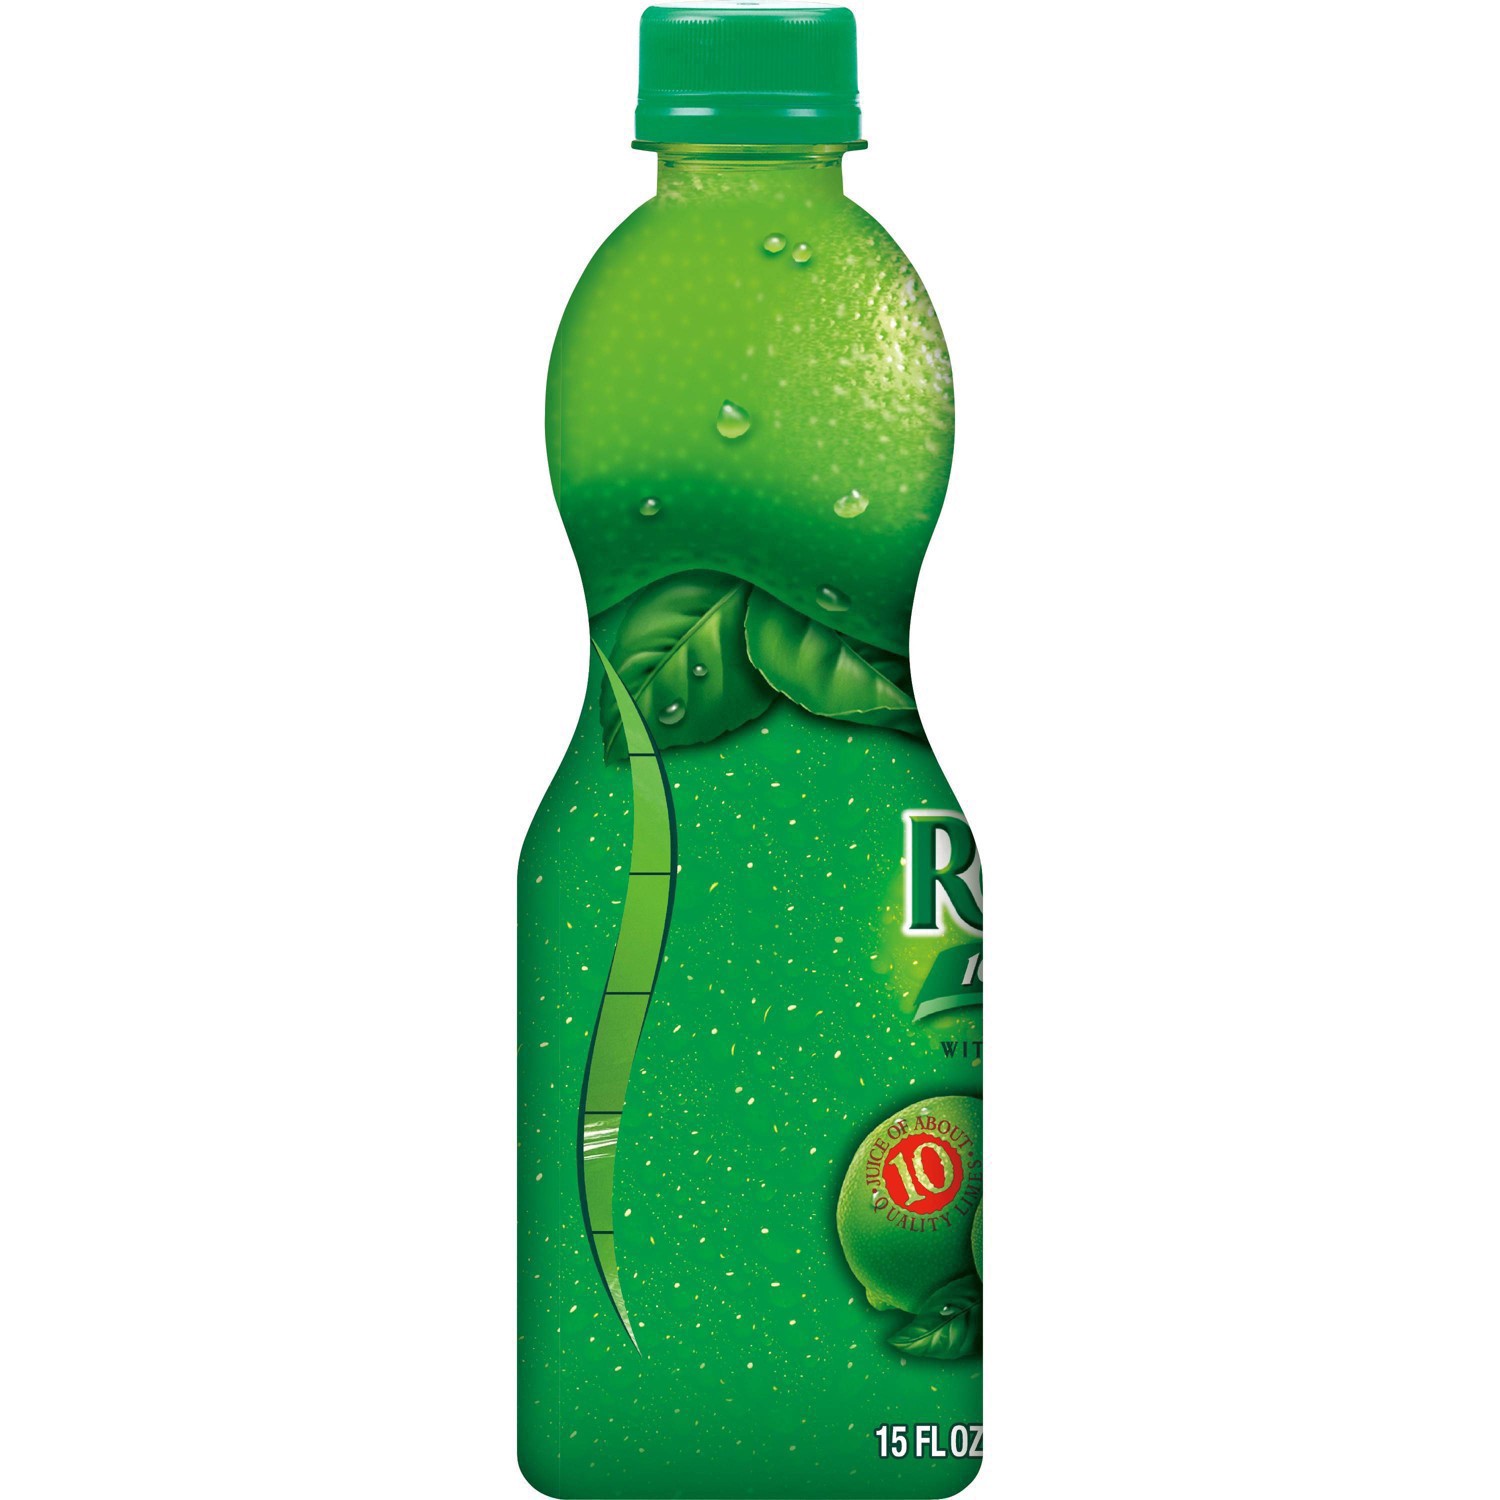 slide 11 of 68, ReaLime 100% Lime Juice Bottle, 15 fl oz